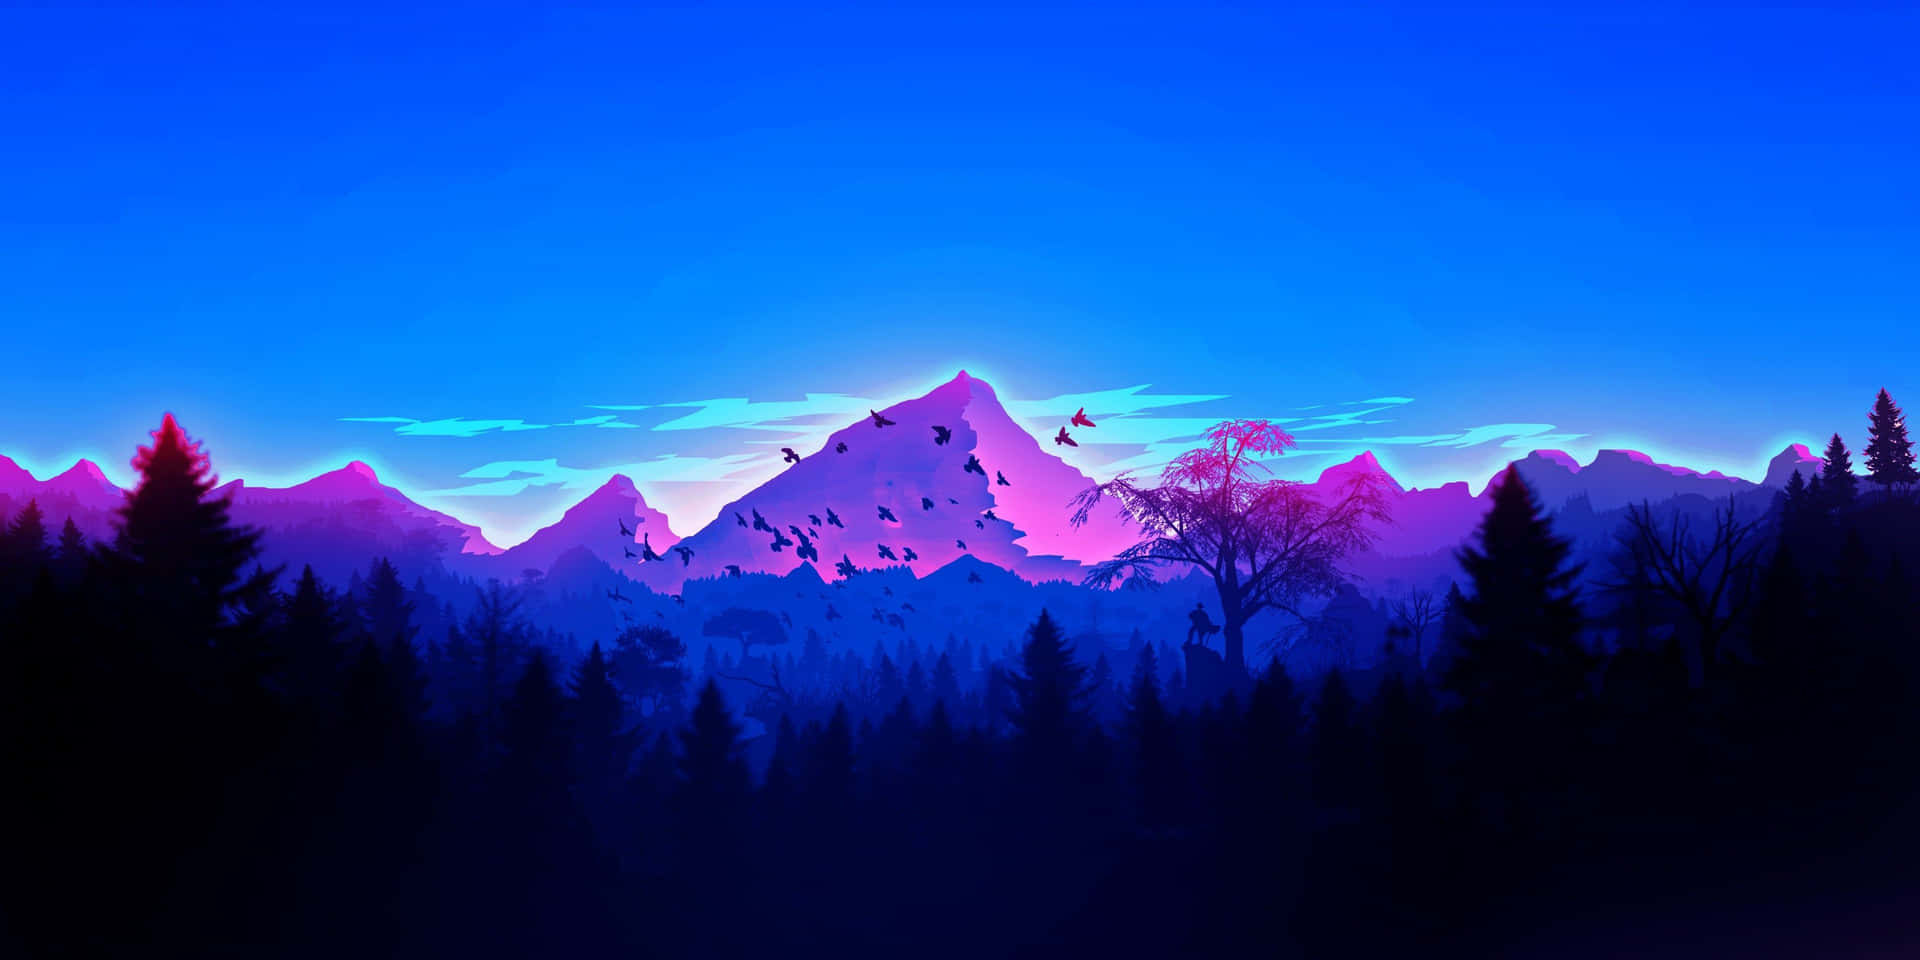 Unaescena De Montaña Minimalista Que Muestra La Simplicidad De La Naturaleza. Fondo de pantalla